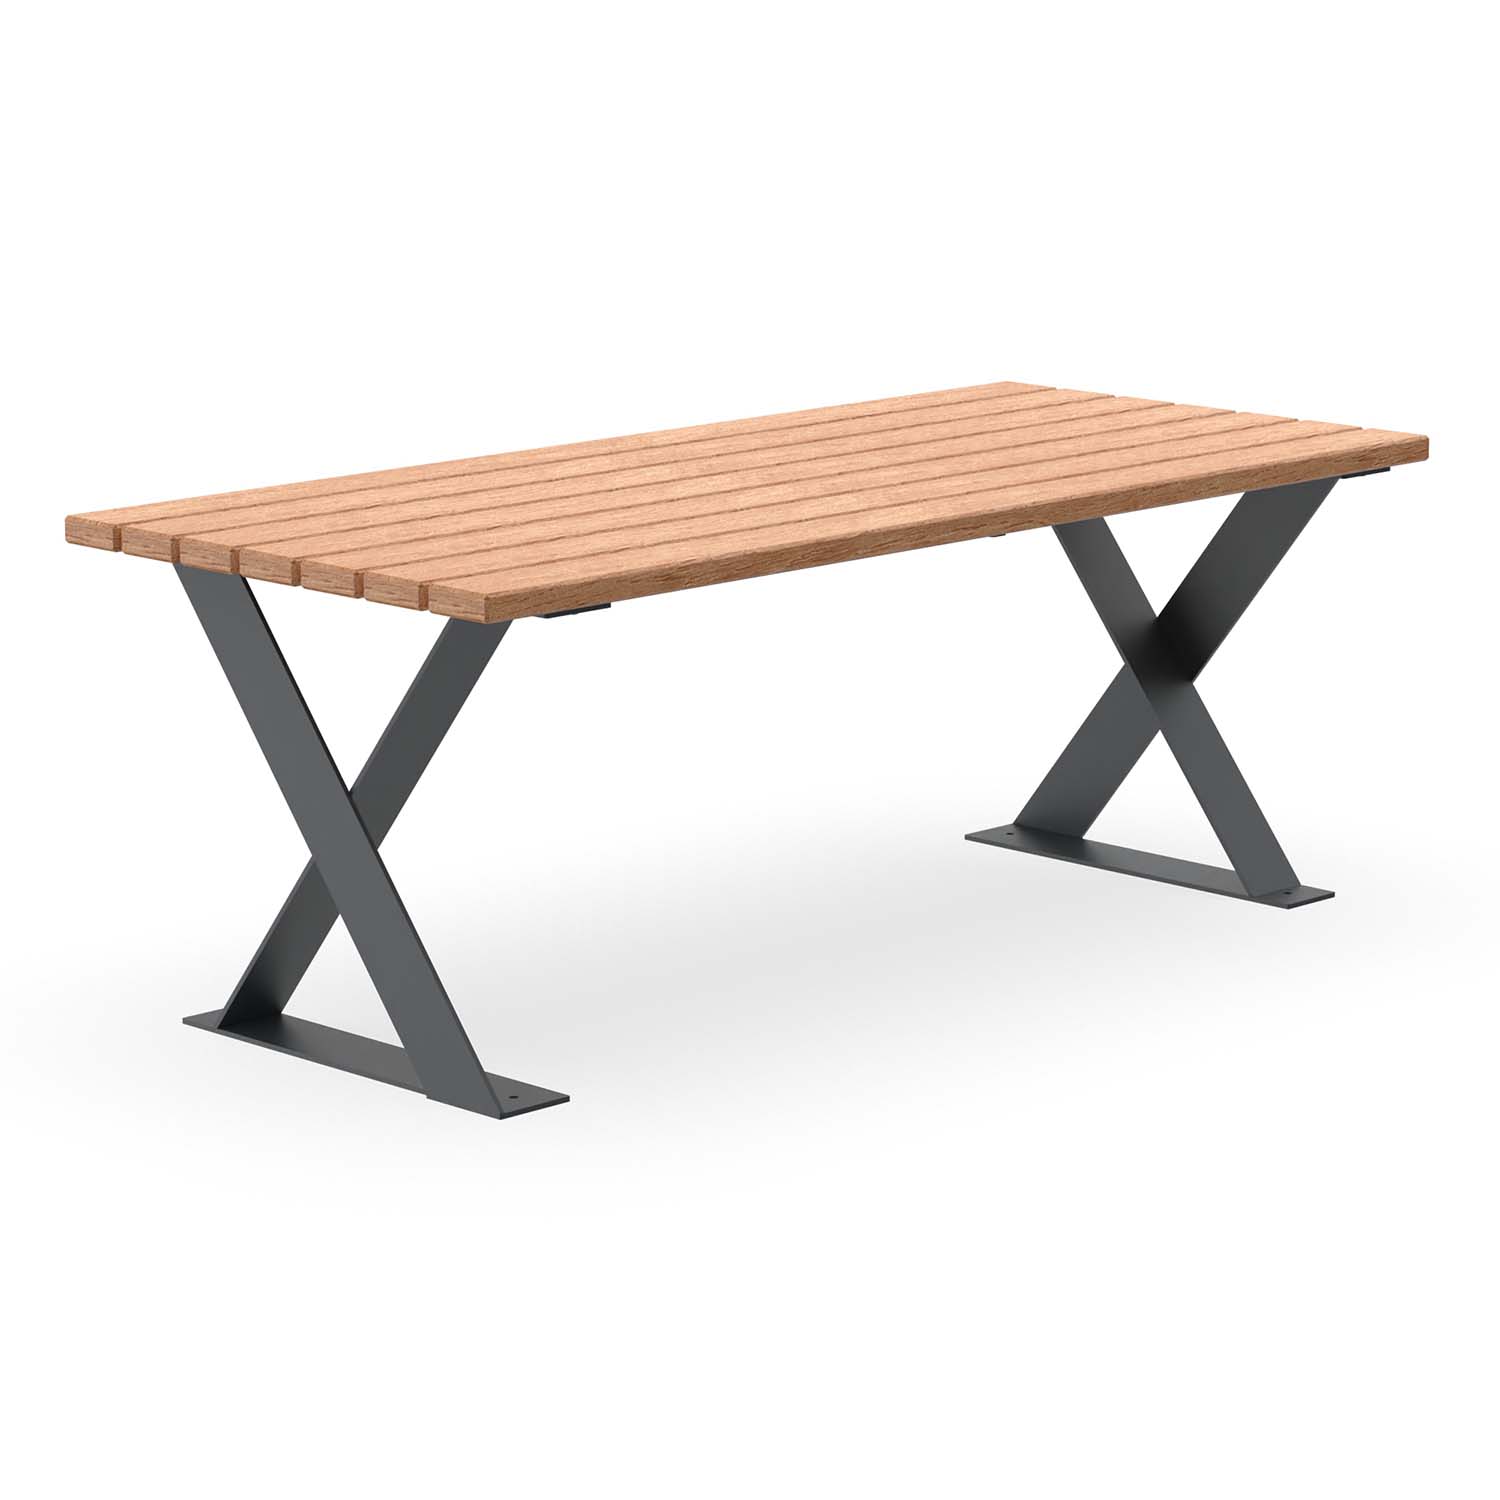 Tisch für Parkbank FLEXI, Gestell aus Flachstahl, Tischfläche aus Holz, farbbeschichtet